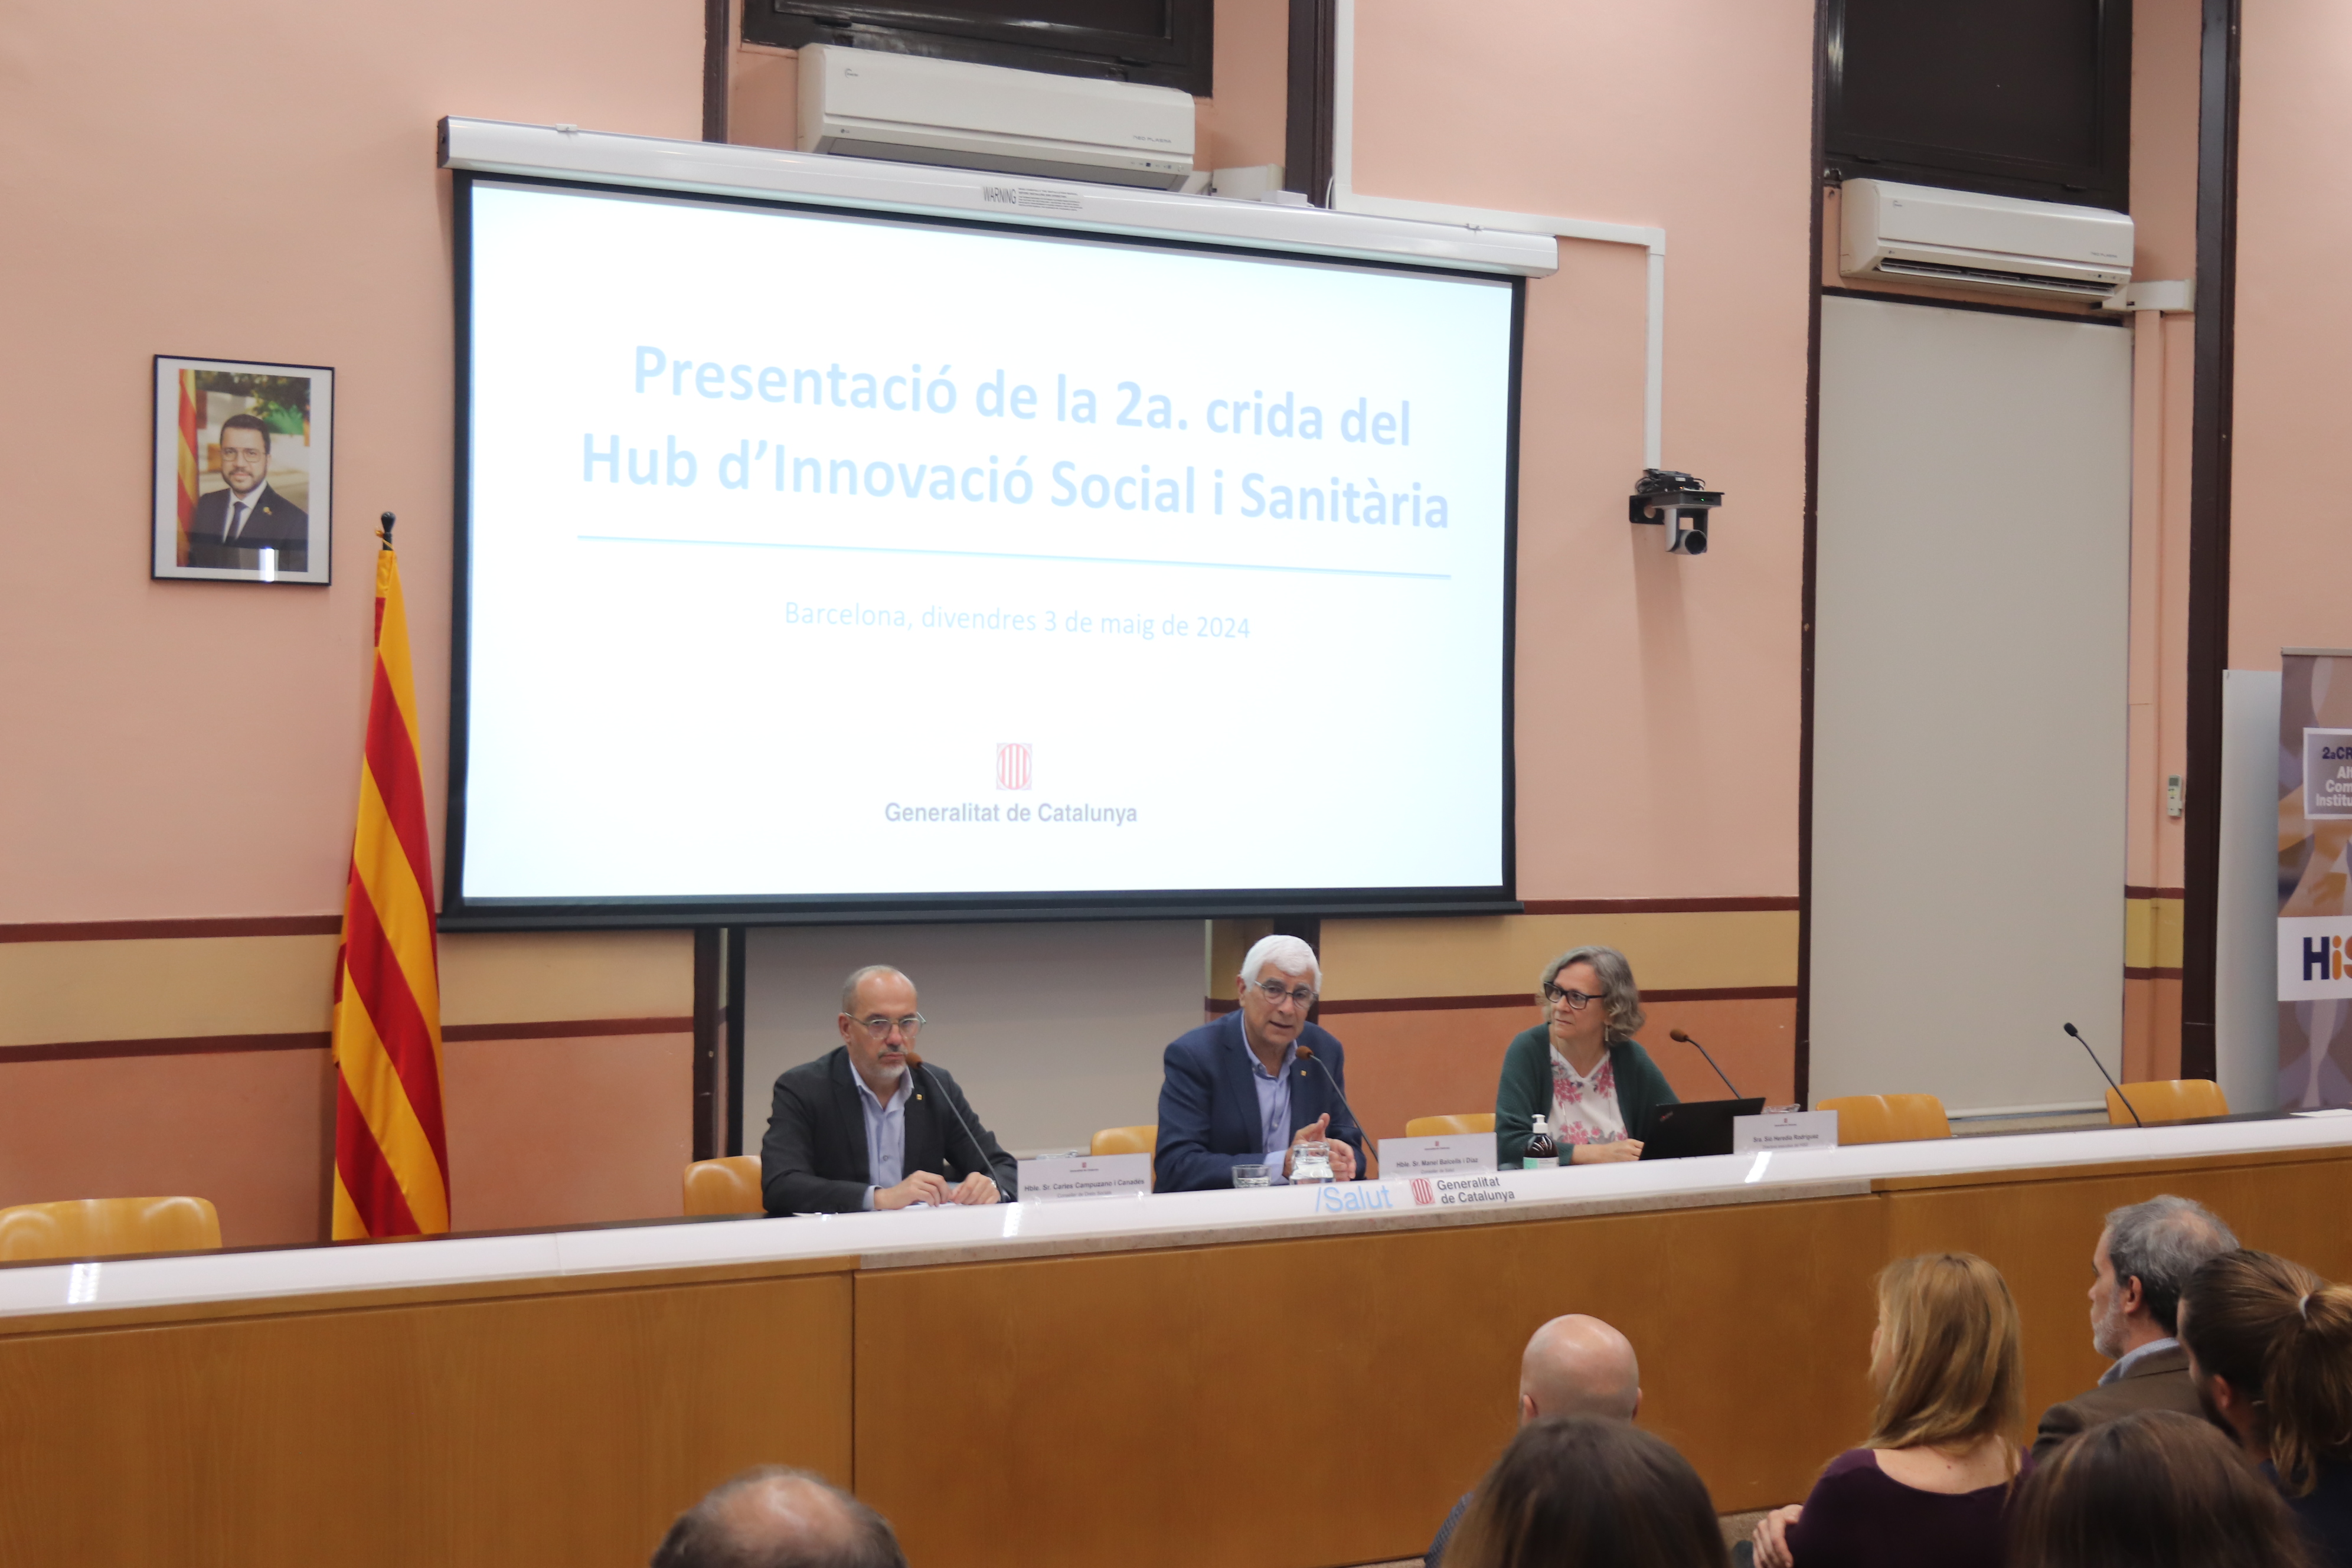 El conseller de Salut, Manel Balcells i Díaz, i el conseller de Drets Socials, Carles Campuzano i Canadés, aquest matí durant la presentació de la segona crida del Hub d’Innovació Social i Sanitària (HiSS).